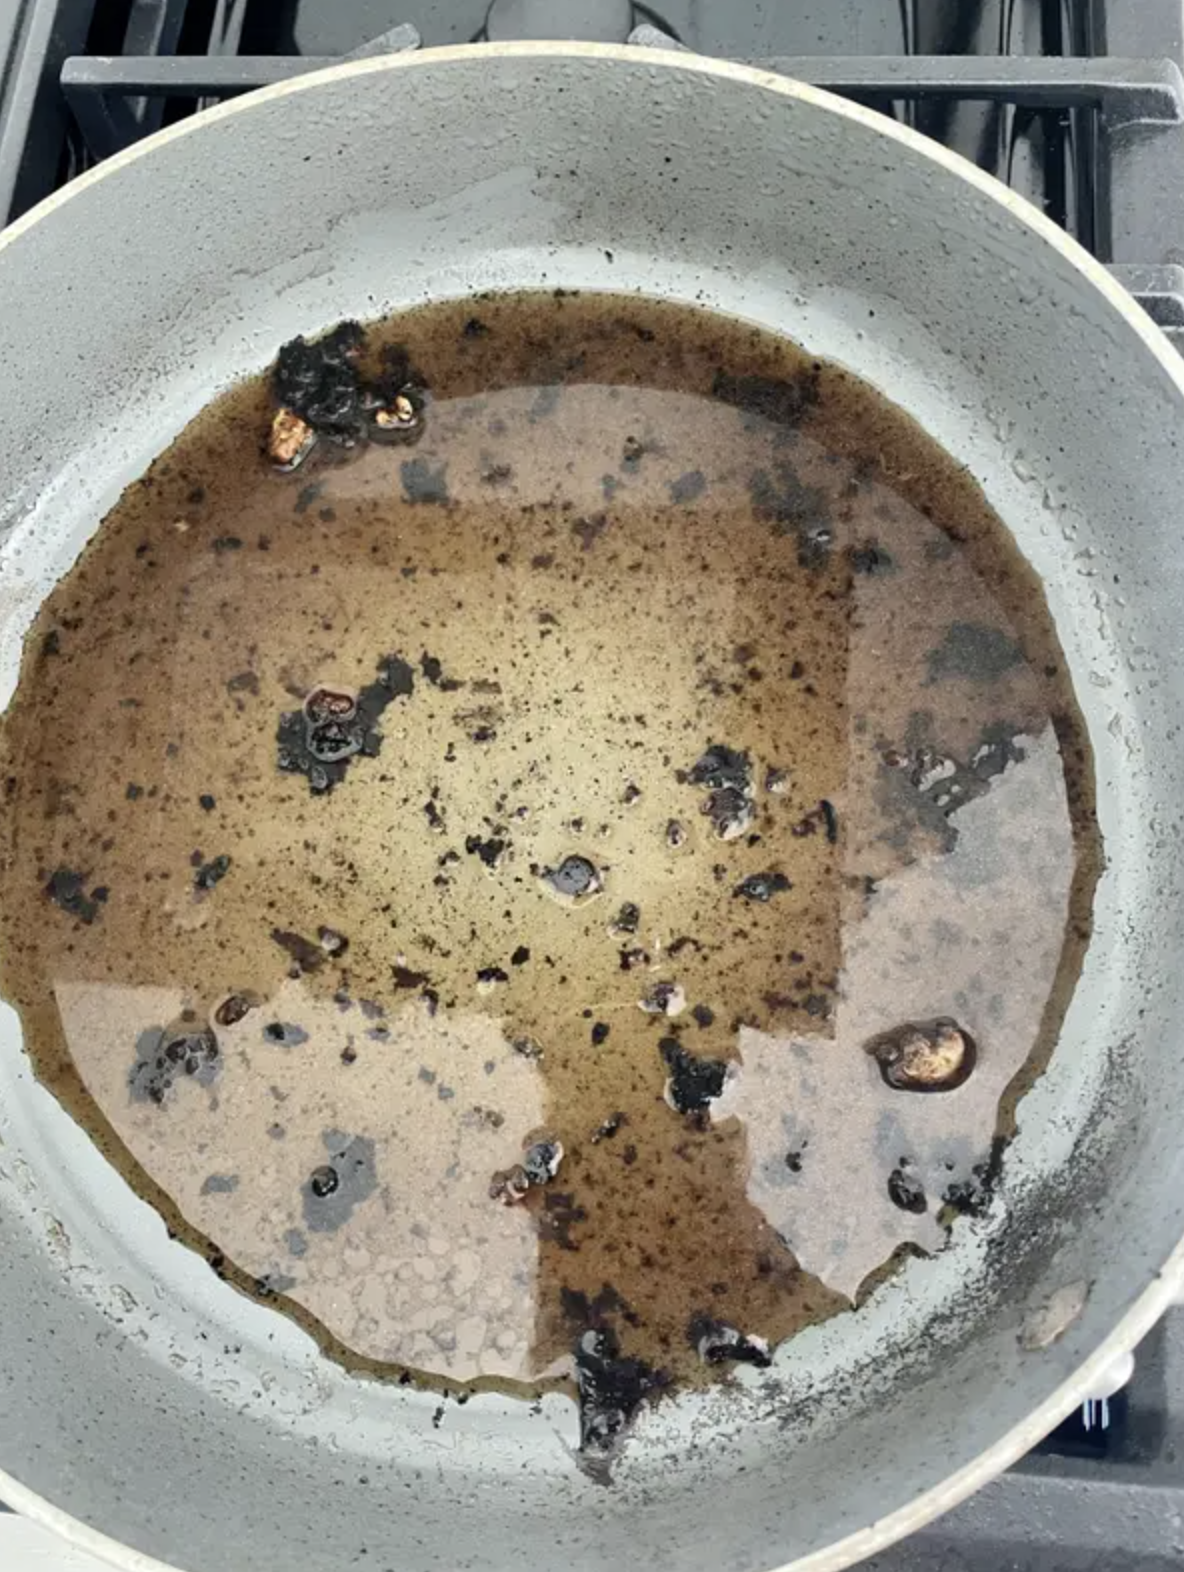 A deglazed pan